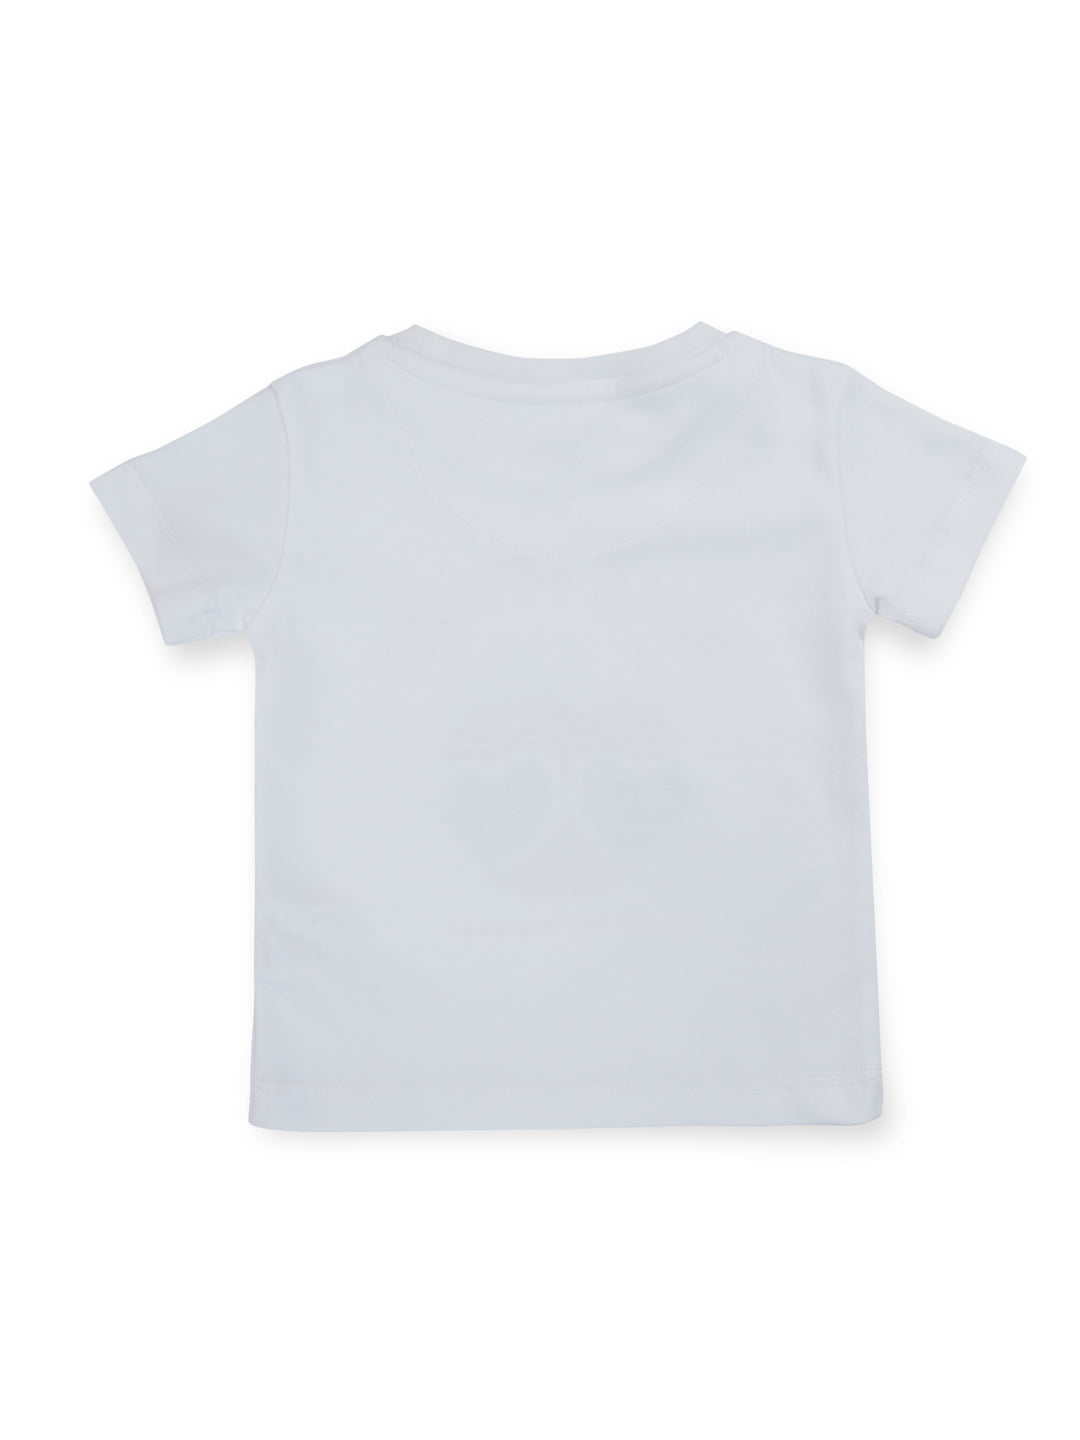 Unisex White Summer Splendor  Cotton Round Neck Half Sleeve T-Shirt